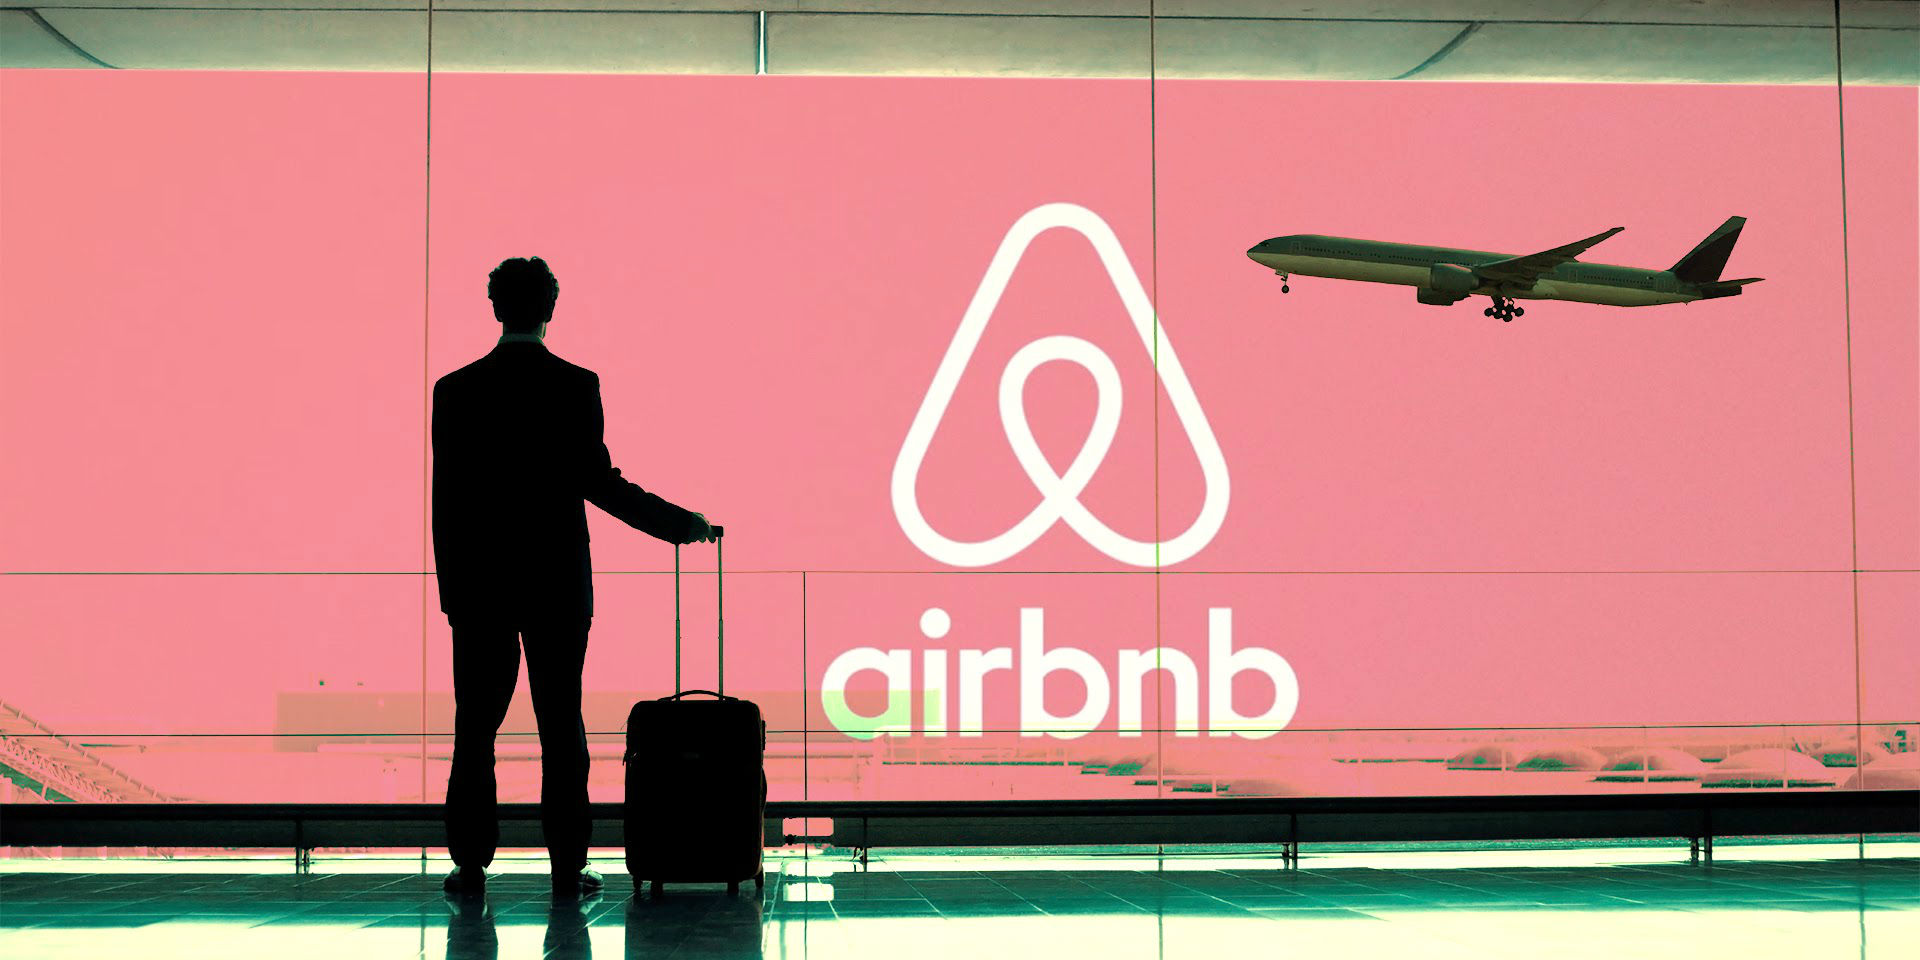 Î‘Ï€Î¿Ï„Î­Î»ÎµÏƒÎ¼Î± ÎµÎ¹ÎºÏŒÎ½Î±Ï‚ Î³Î¹Î± Airbnb to expand offerings beyond home sharing to ensure â€˜best tripâ€™